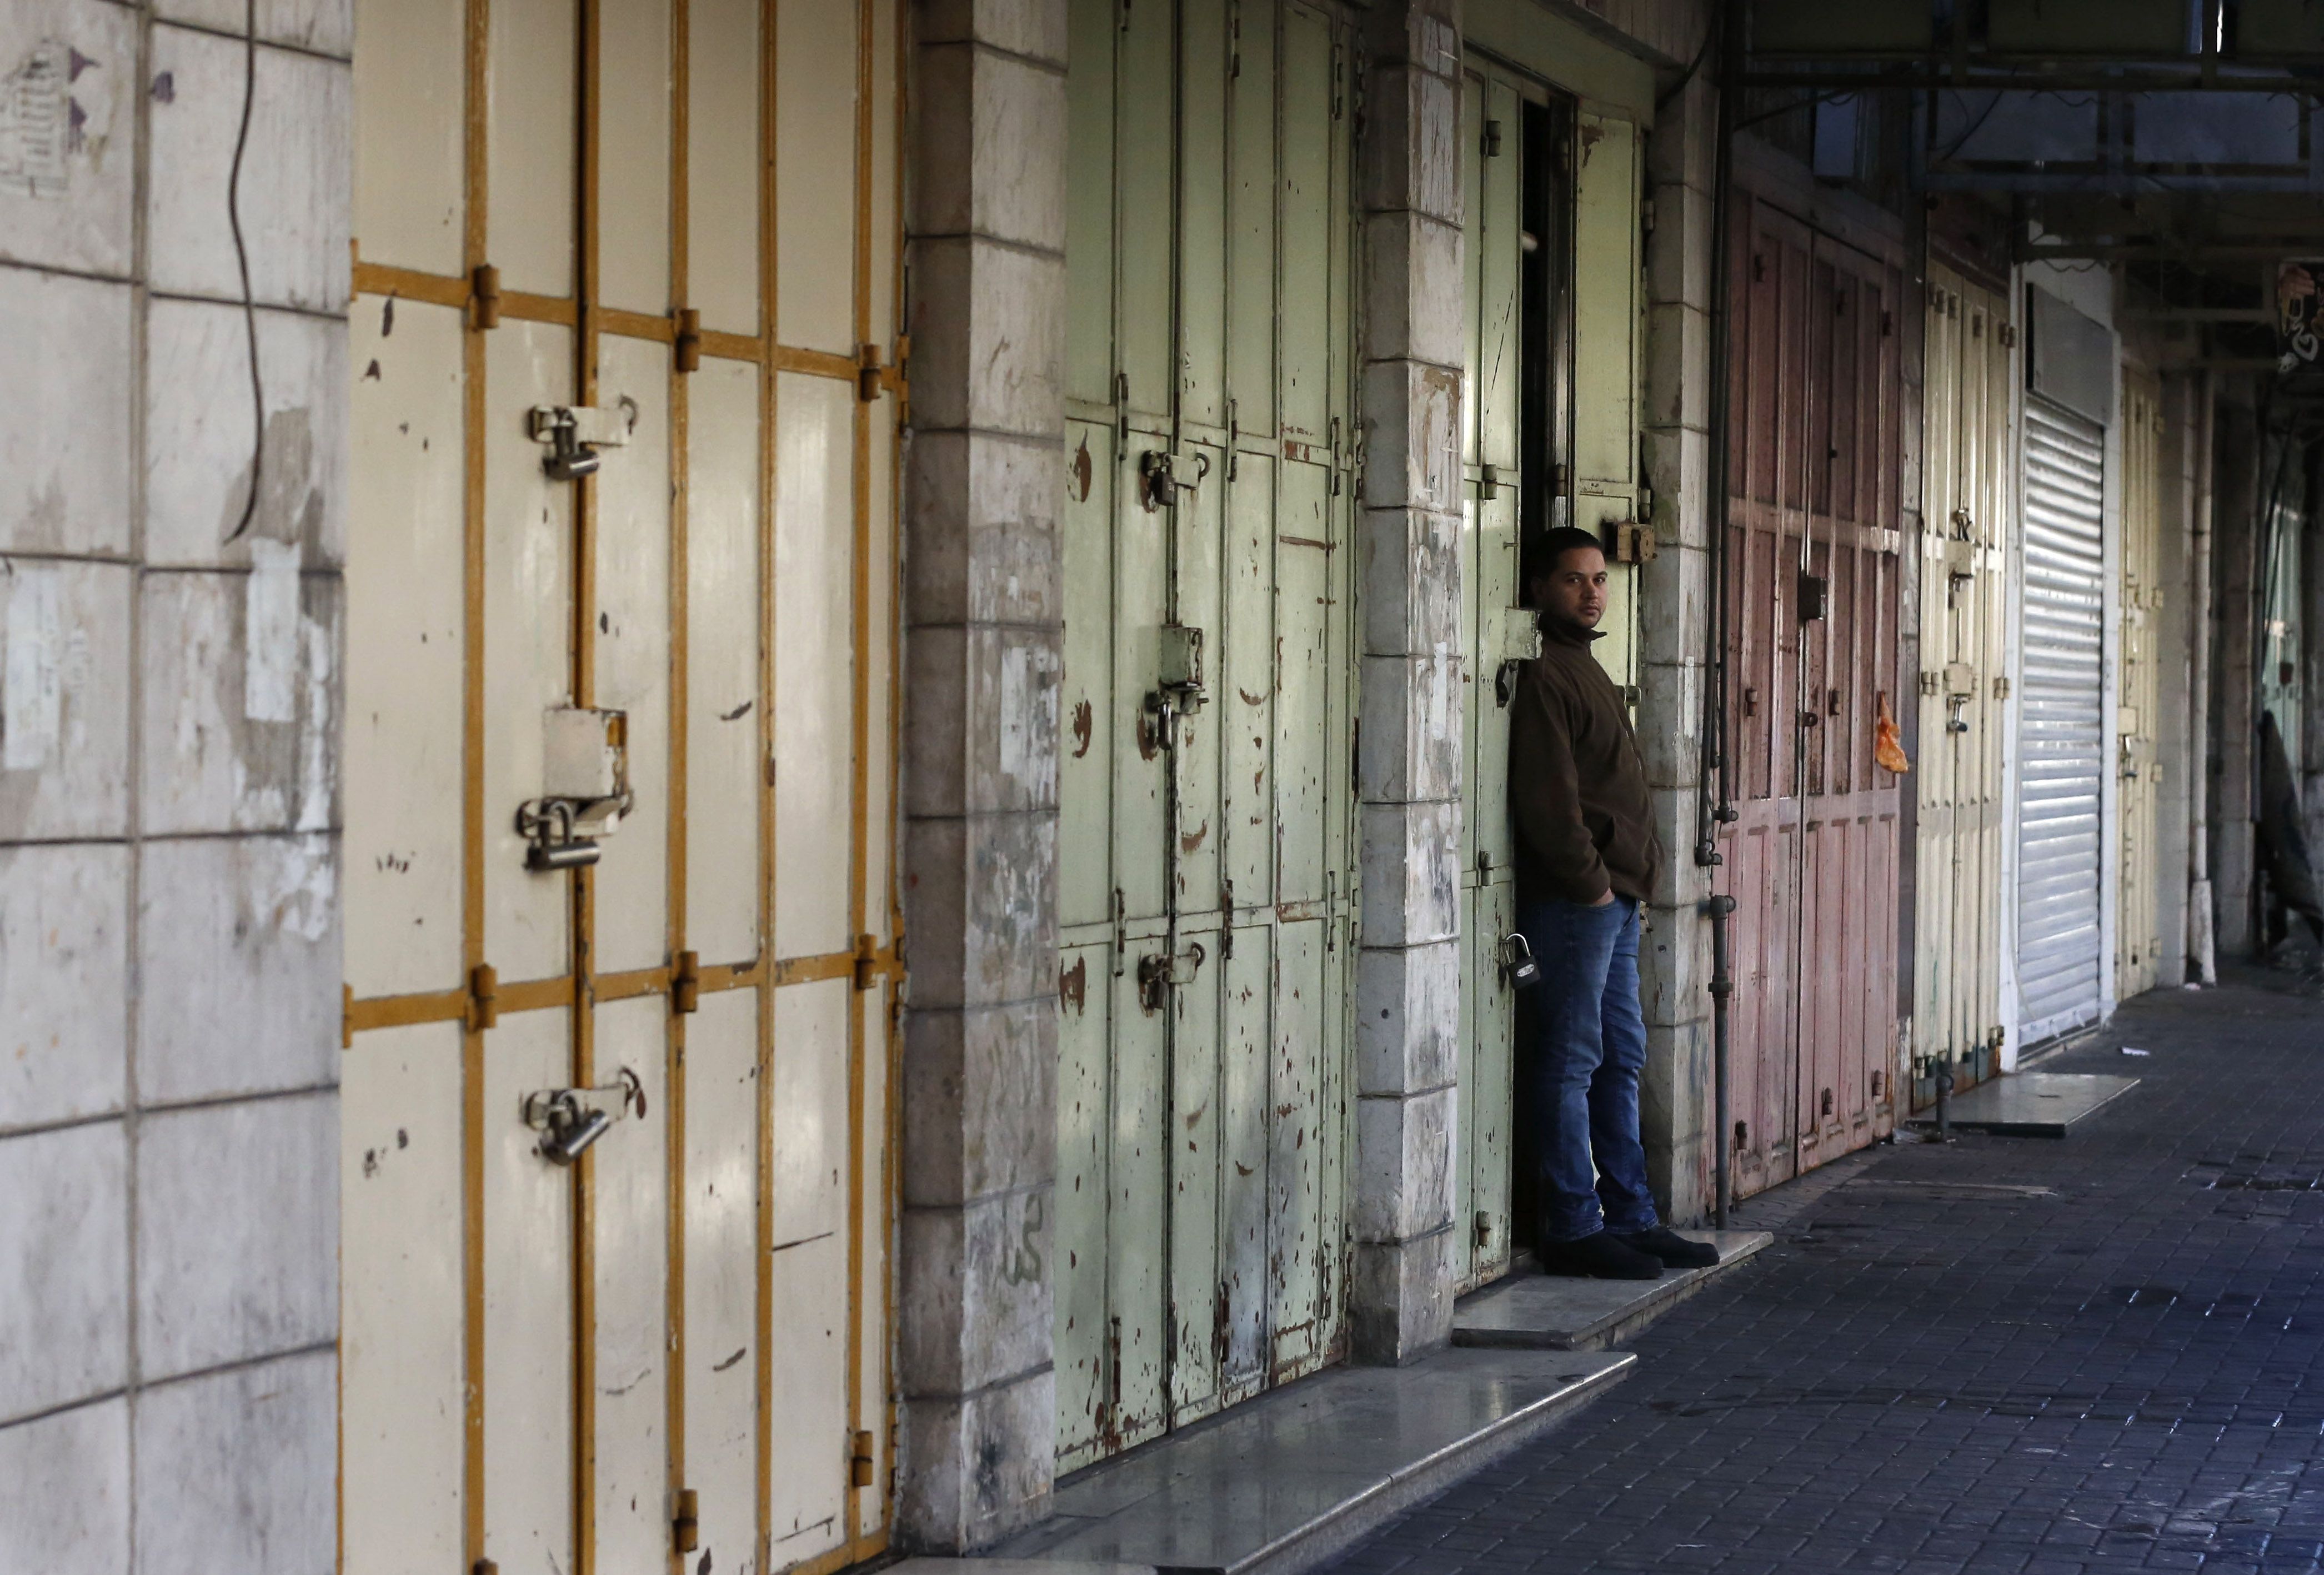 المحال التجارية تغلق ابوابها فى القدس استجابة للاضراب العام